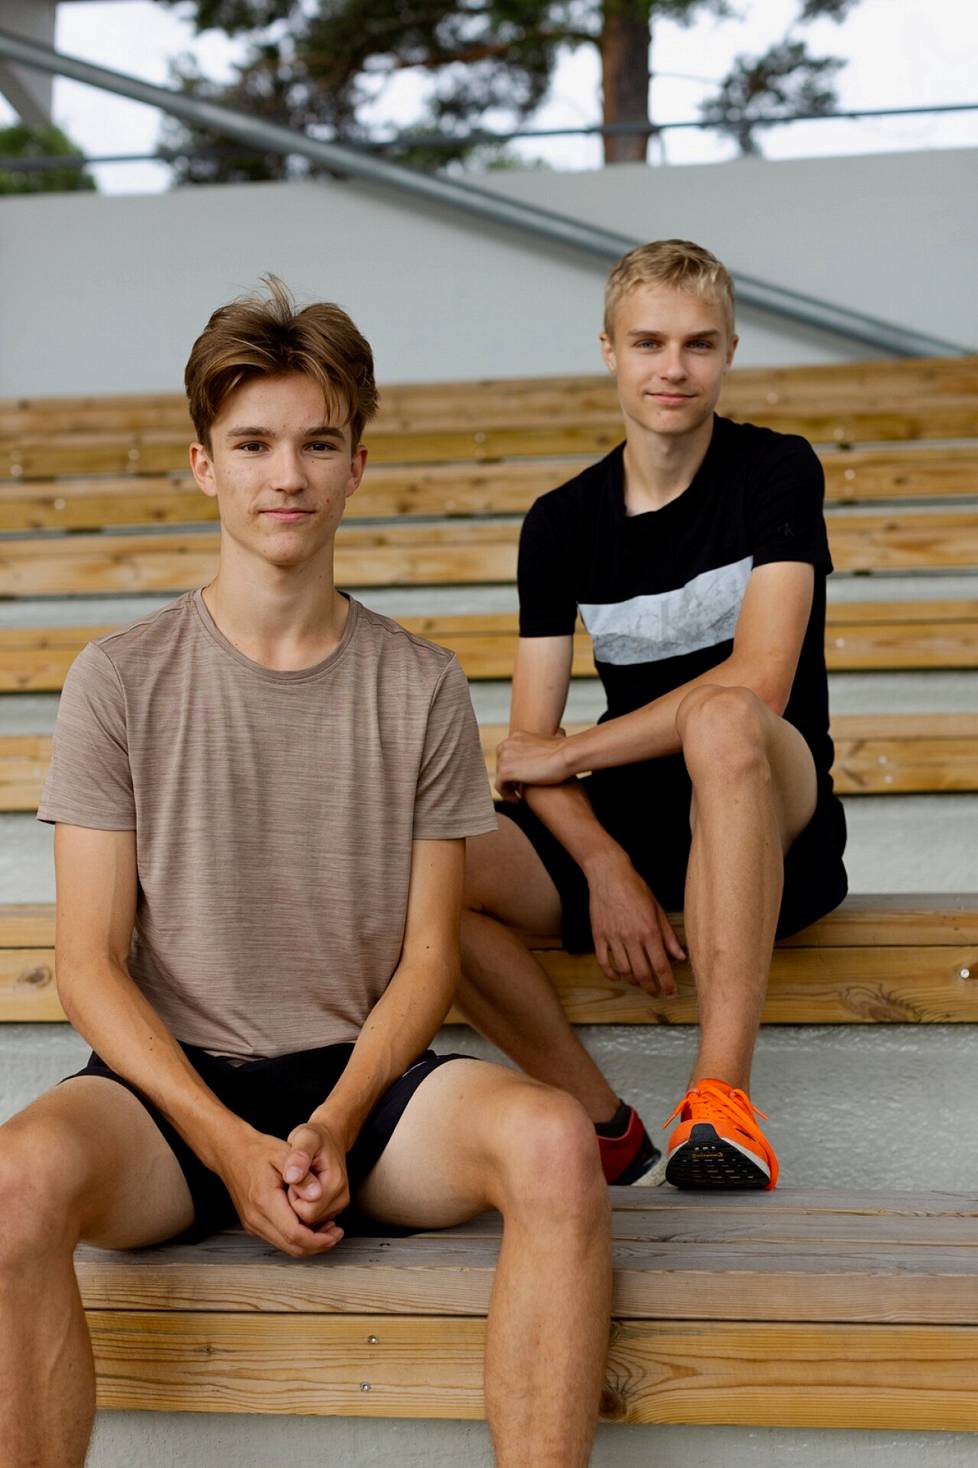 Rasmus ja Kasperi Vehmaa ovat kaksosia, vaikka sitä ei välttämättä päälle päin huomaa.